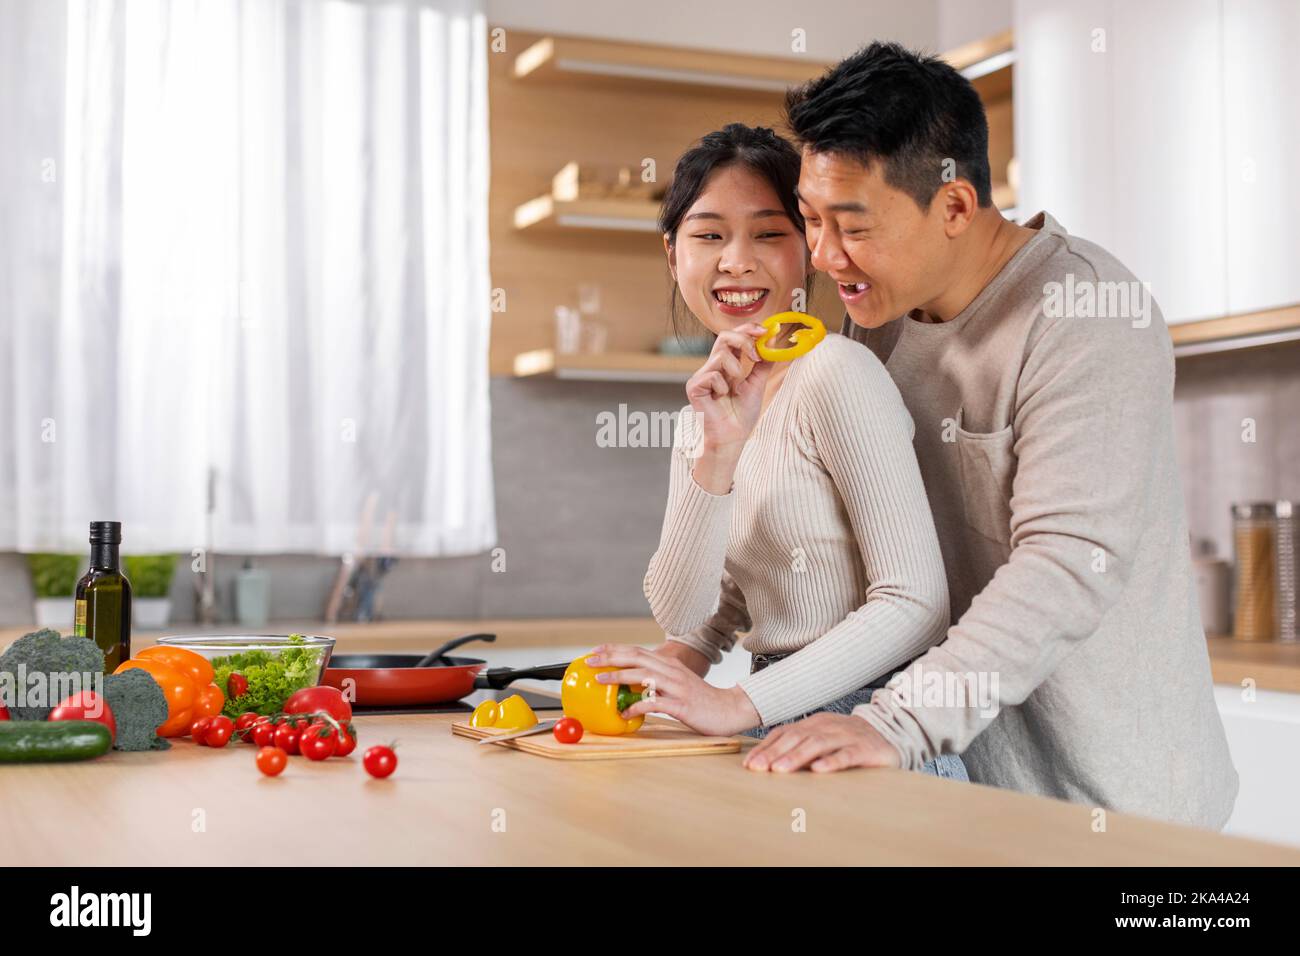 Une femme chinoise aimante cuisinant pour son petit ami à la maison Banque D'Images